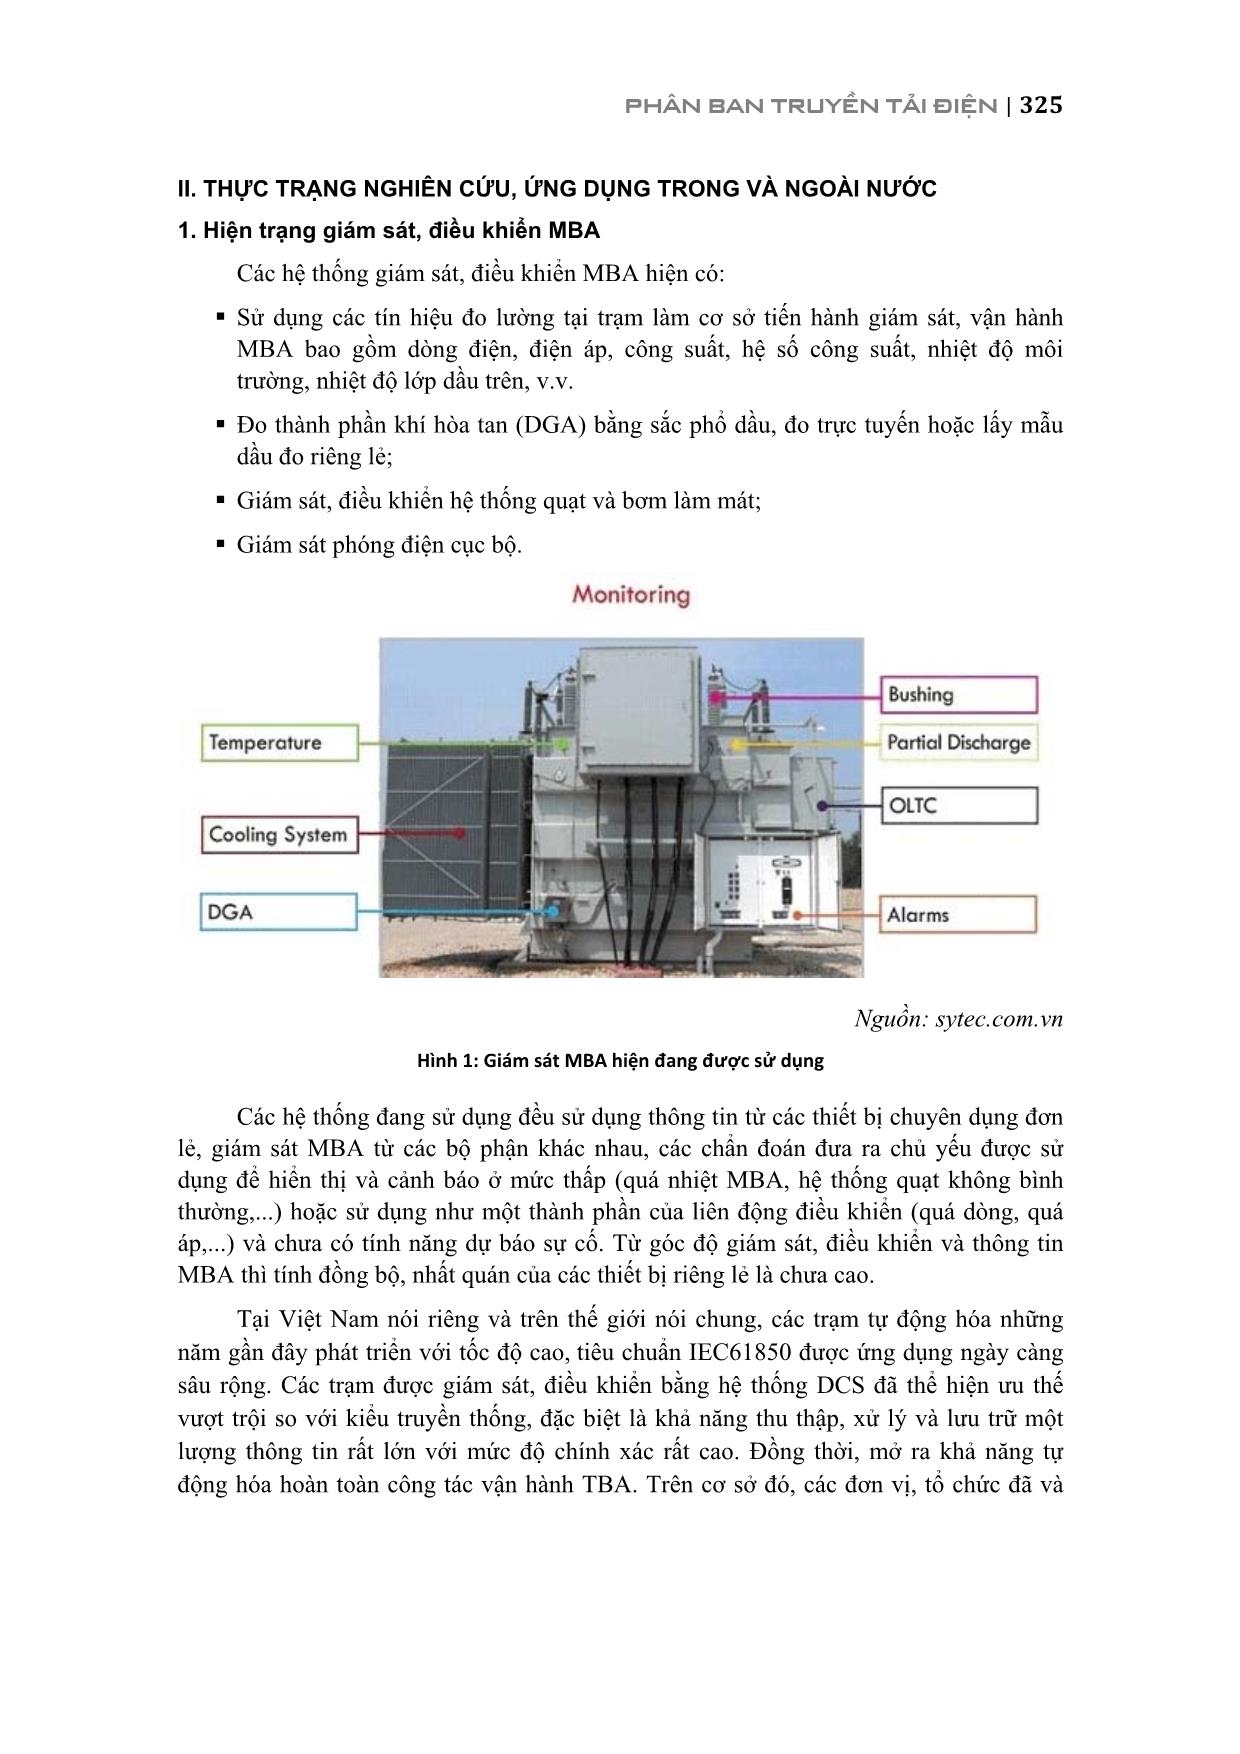 Nghiên cứu ứng dụng phương pháp giám sát nhiệt độ điểm nóng cuộn dây và phương pháp phân tích thành phần khí hòa tan trong dầu cho hệ thống giám sát online mba trang 2